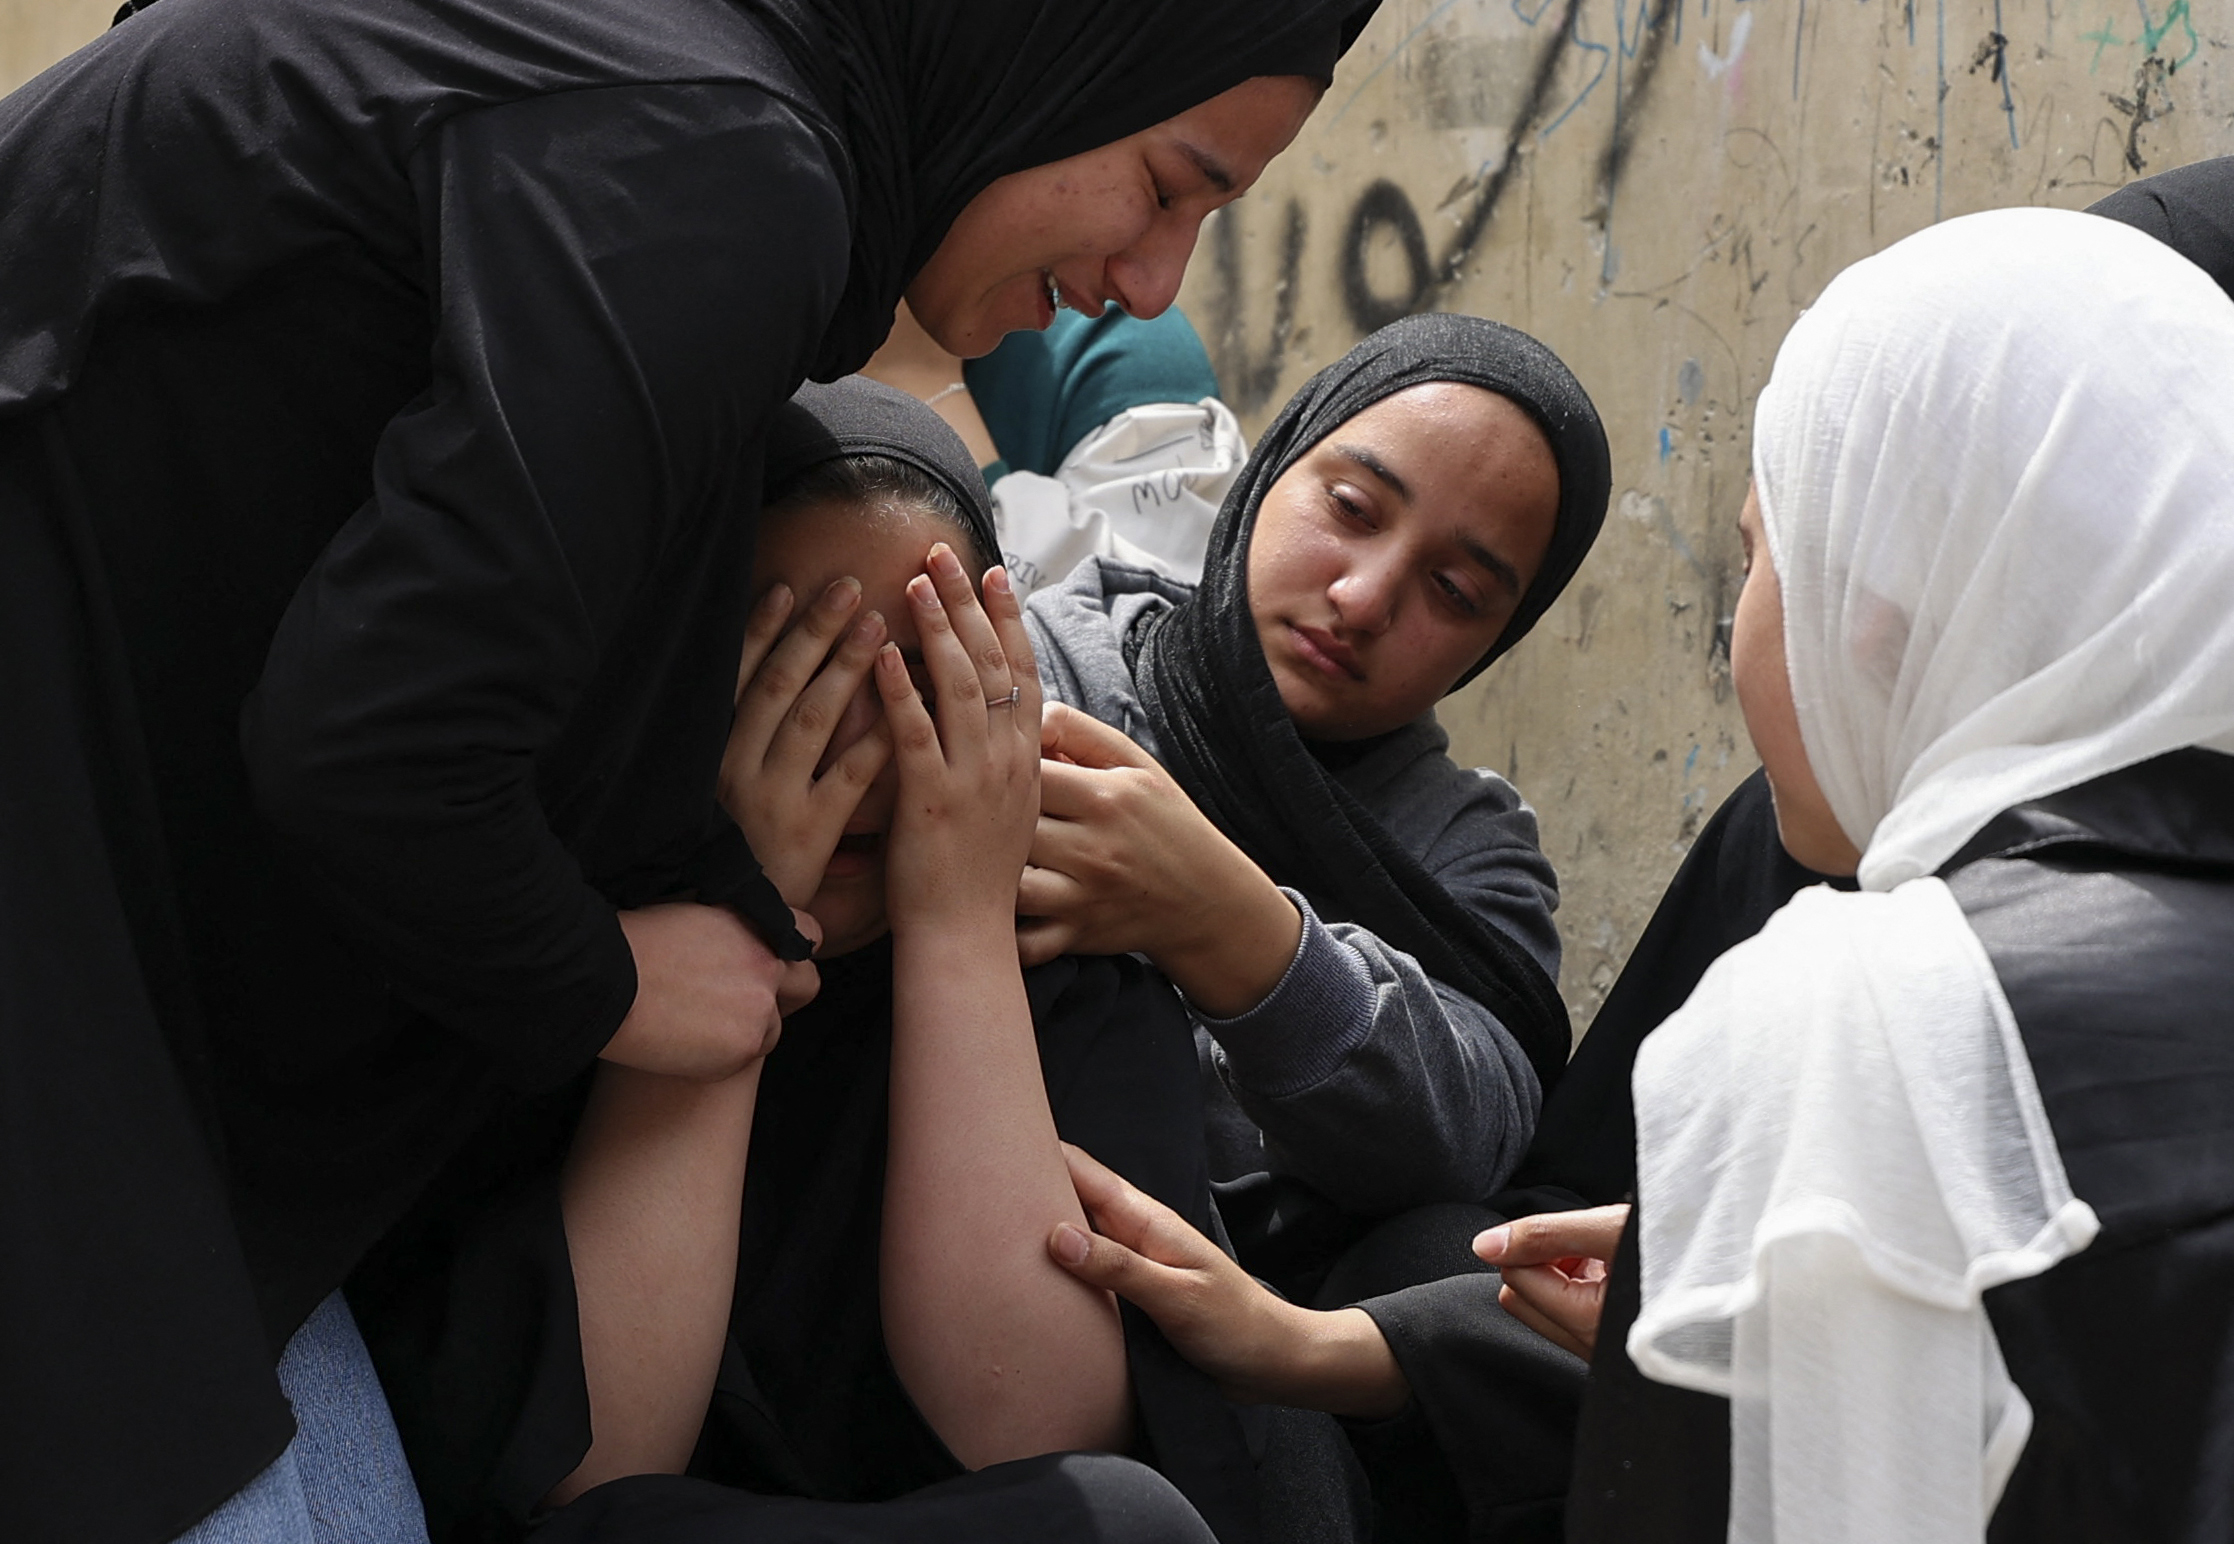 Egy 17 éves palesztint lőttek agyon az izraeli hatóságok egy összecsapás során